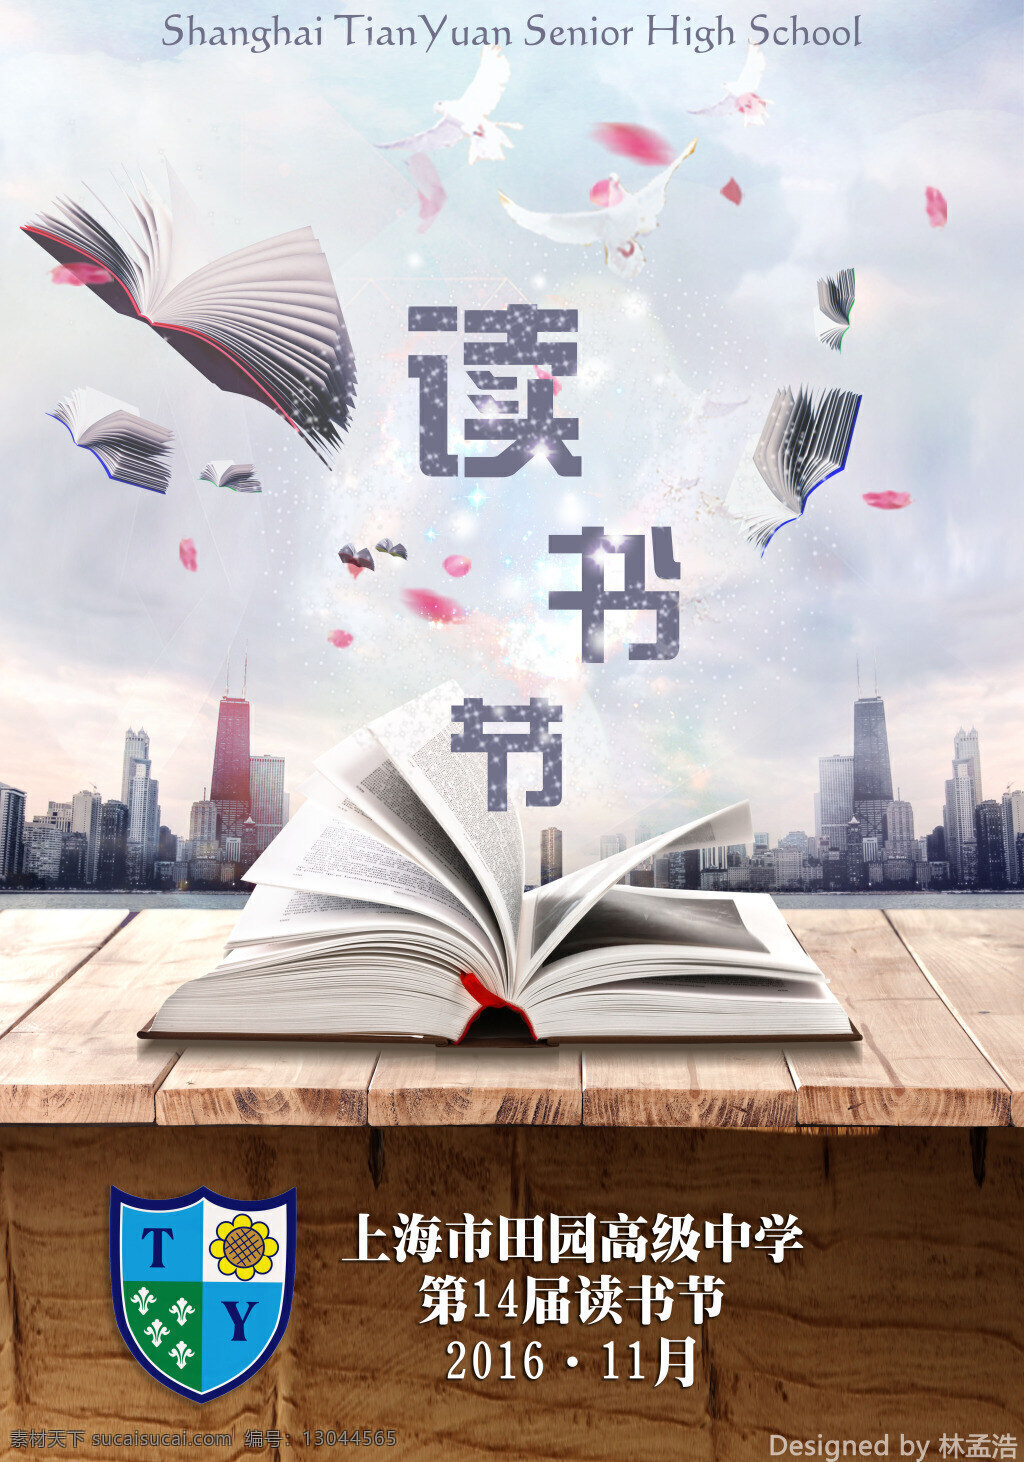 上海市 田园 高级中学 读书节 海报 学校 读书 书本 城市 上海 木板 花瓣 白鸽 校园风